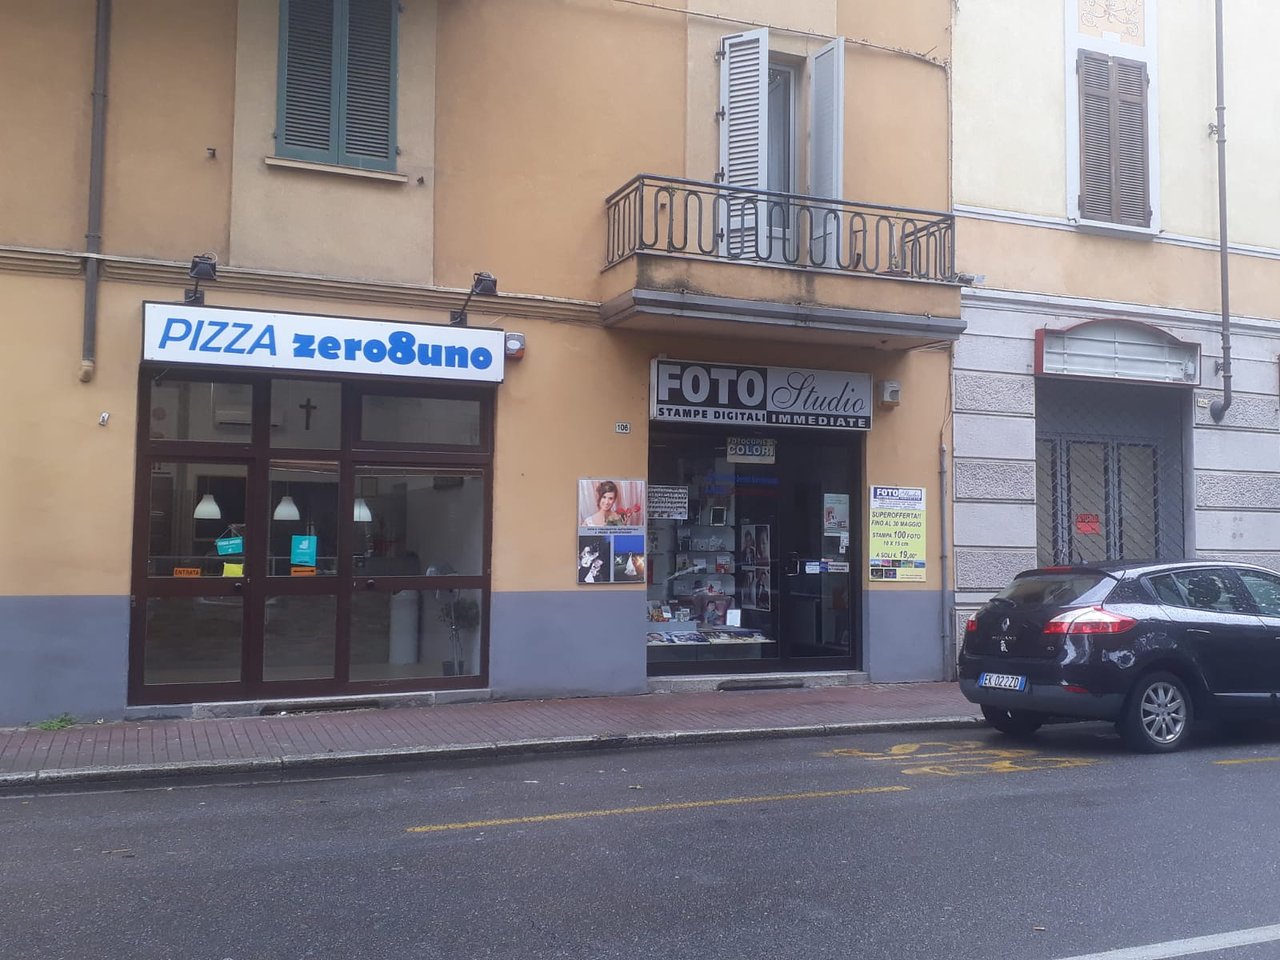 Pizza Zero 8 Uno, Novara